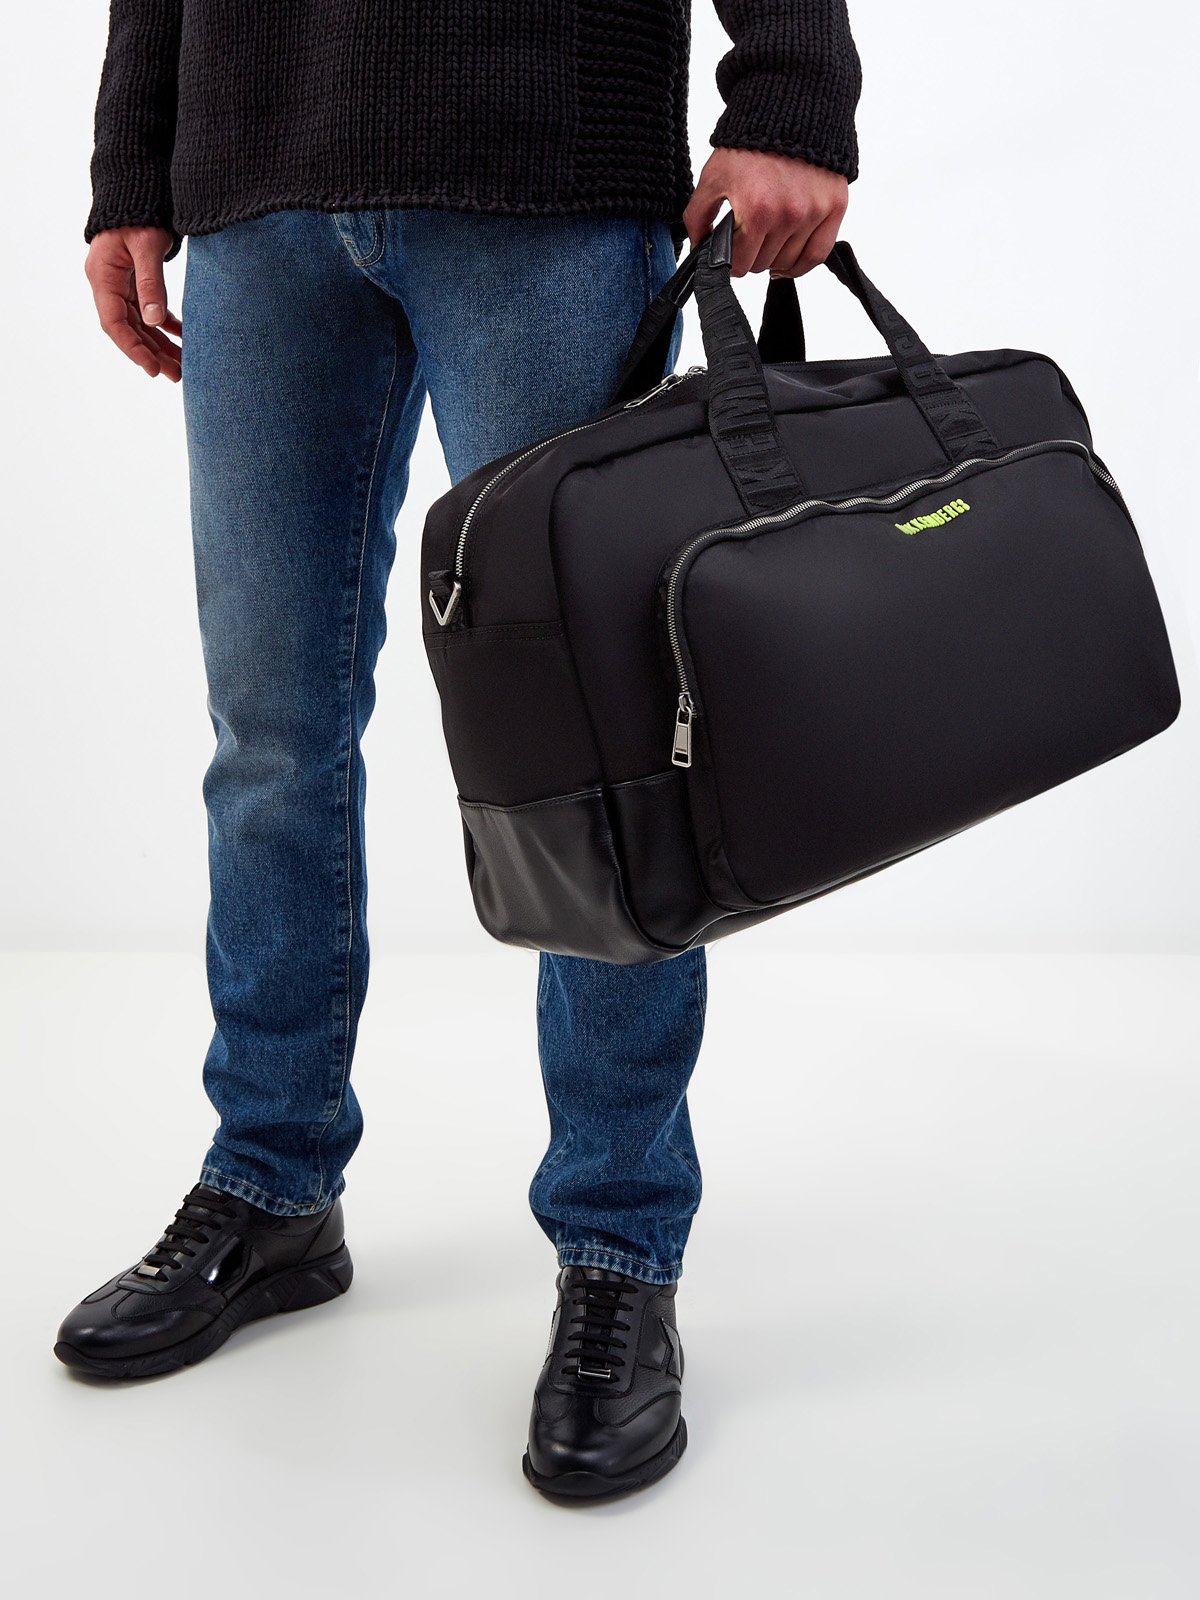 Дорожная сумка Next 3.0 в спортивном стиле BIKKEMBERGS, цвет черный, размер M - фото 2